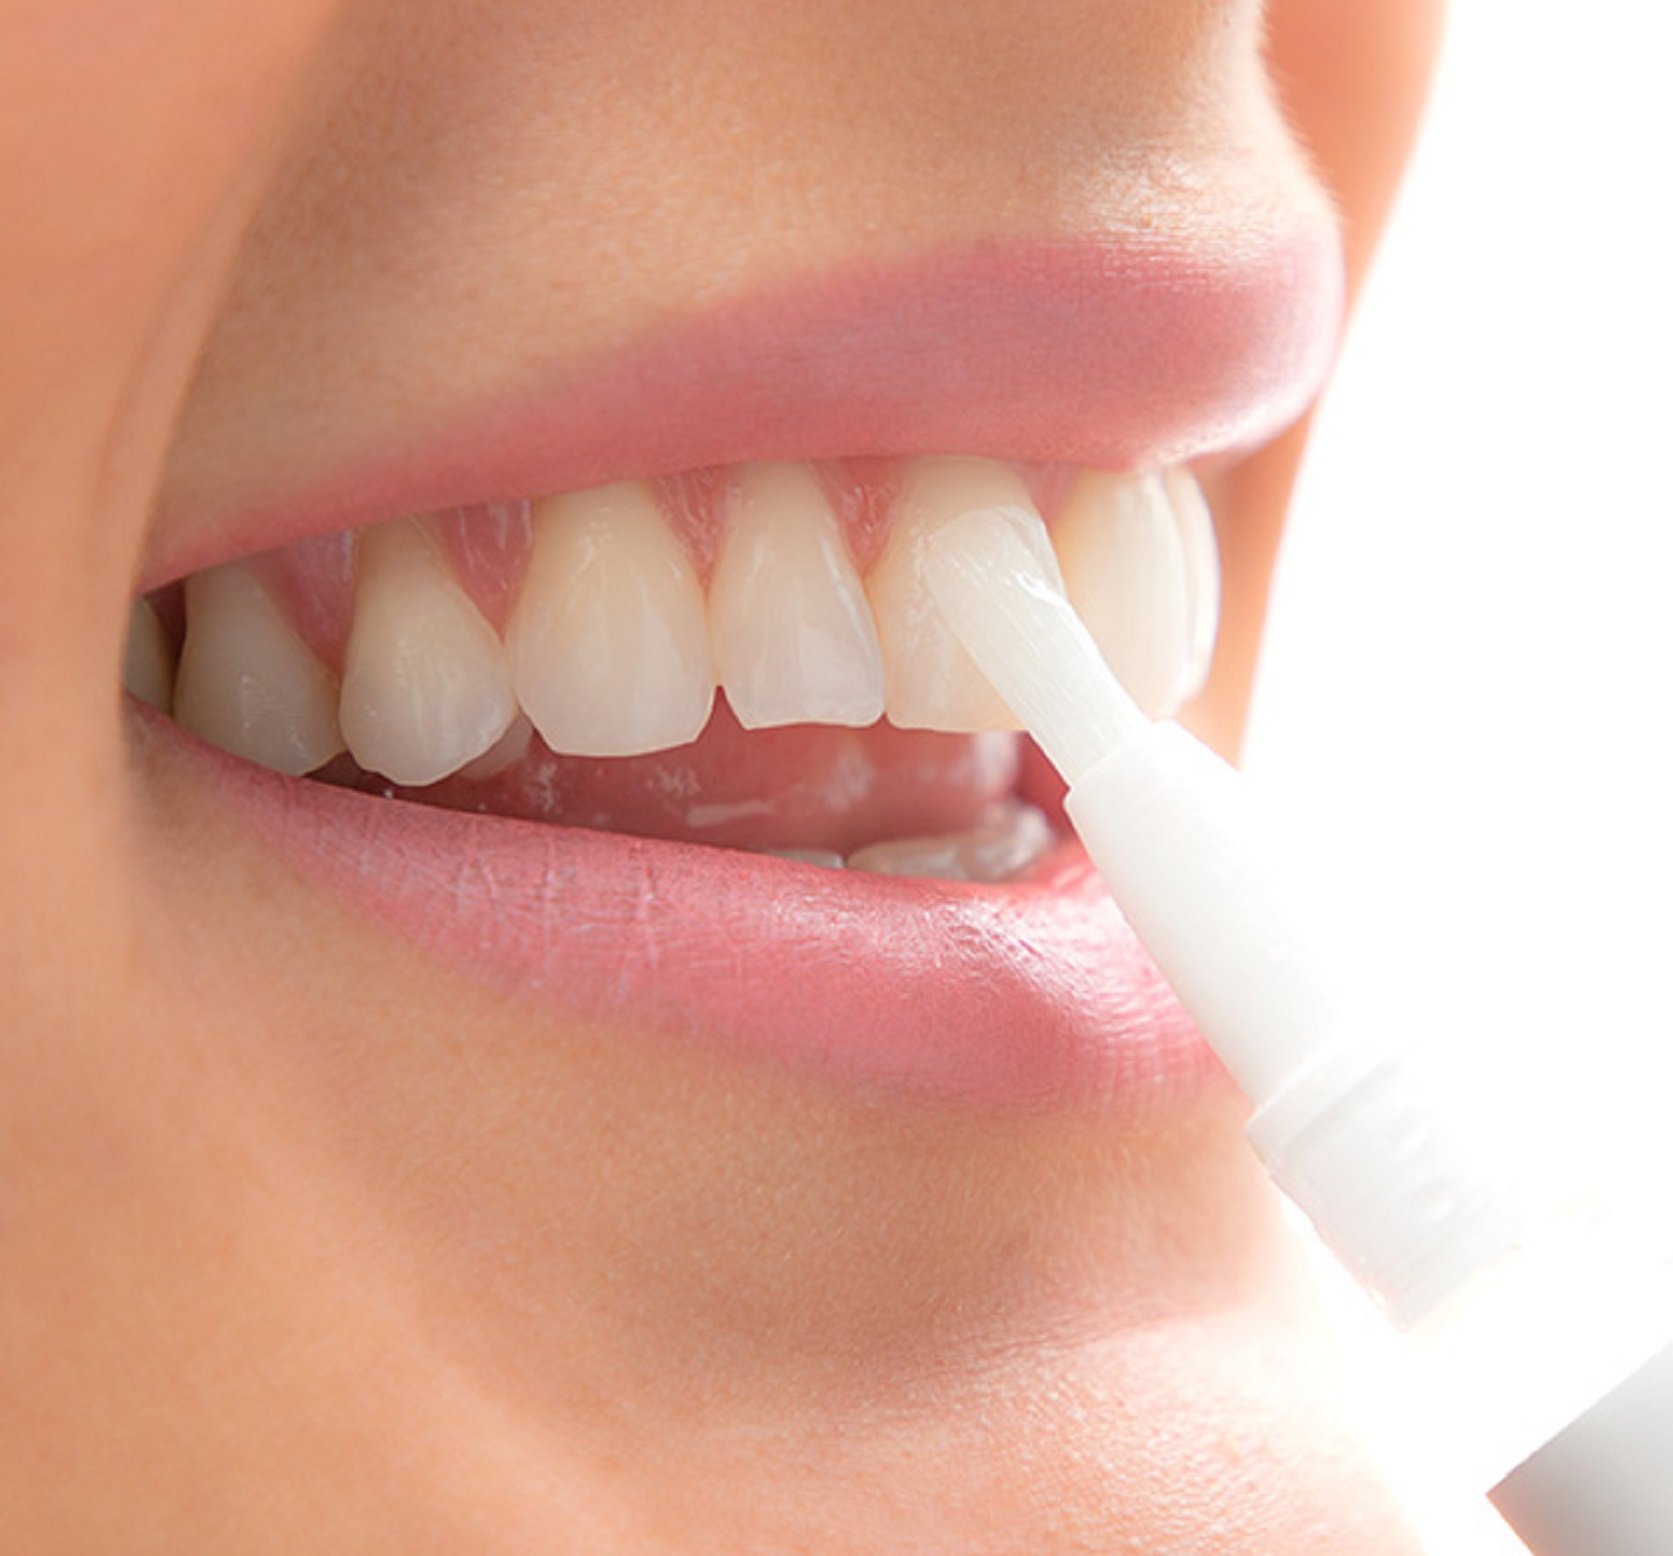 Amazon y Carrefour lanzan un lápiz blanqueador de dientes para la mejor sonrisa